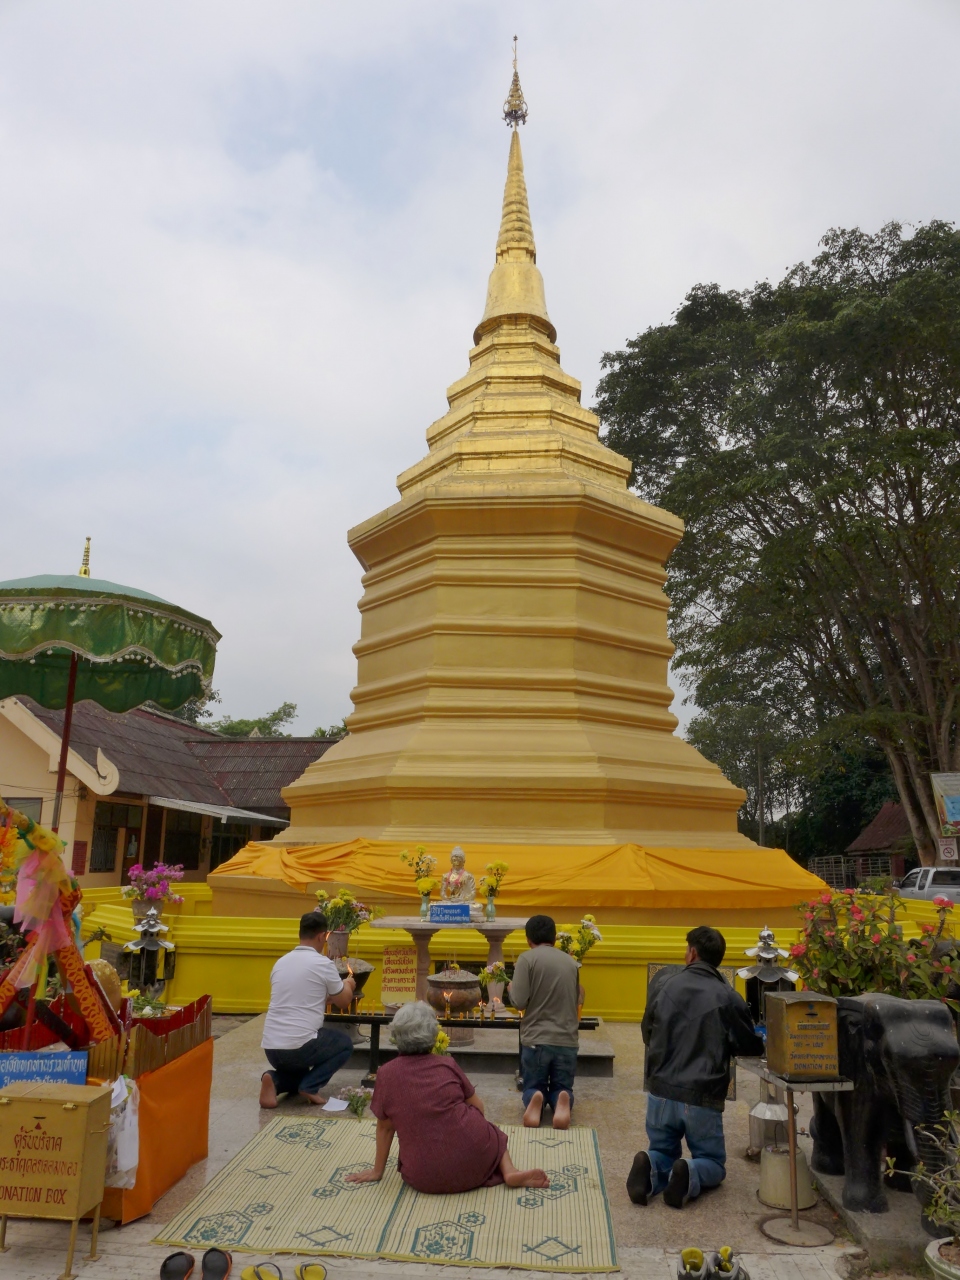 ワット プラ タート ドイ チョム トン                Wat Phra That Doi Chom Thong